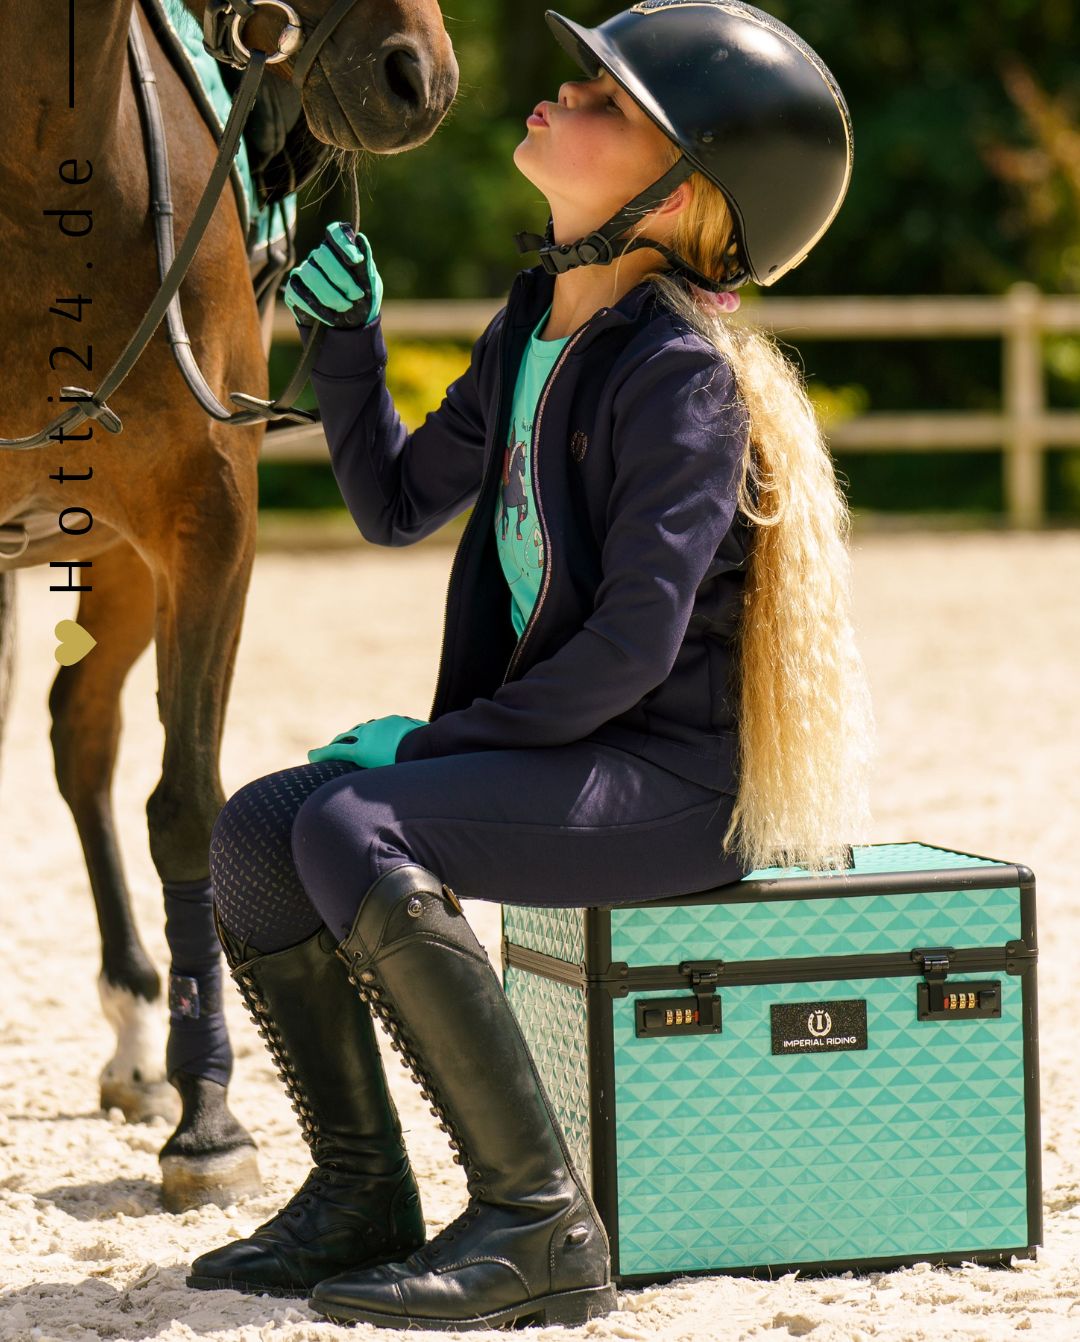 Imperial Riding »Pferde Putzbox Putzkoffer Shiny Türkis, unser Bestseller Putzbox Shiny ist das perfekte Beauty-Case zur Aufbewahrung all deiner Pflegeprodukte und Accessoires Artikelnummer st68120002-6570 erhältlich bei www.Hotti24.de - Putzbox mit Mädchen und Pferd